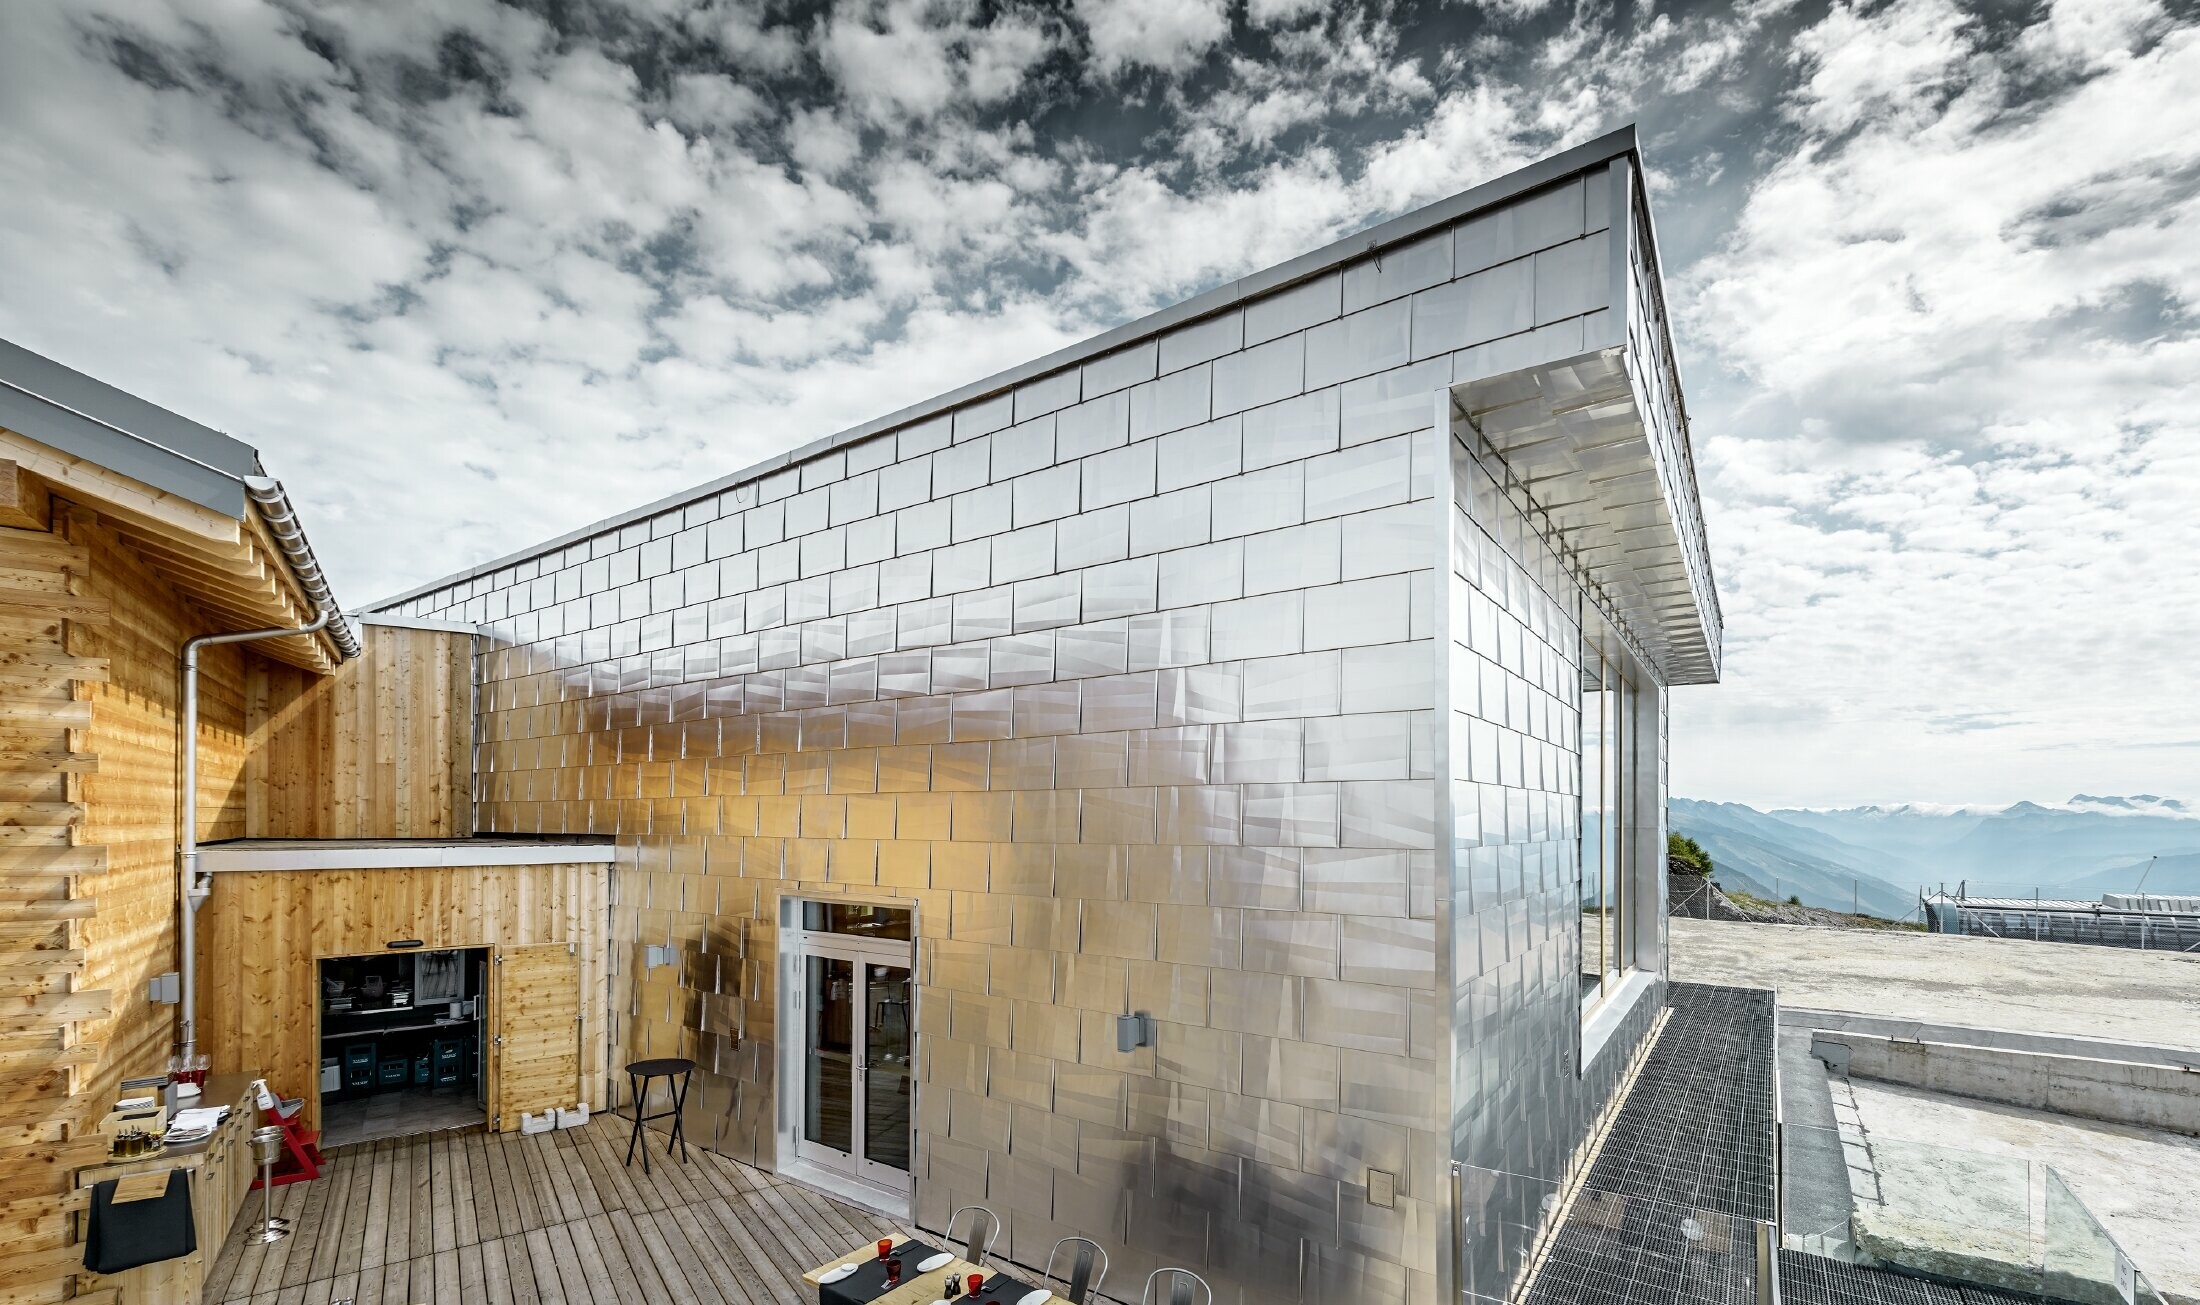 Glanzende aluminium gevel in aluminium naturel blank van de Cry D'Er Club d'Altitude in Zwitserland; de gevel reflecteert het schitterende 360° panorama.